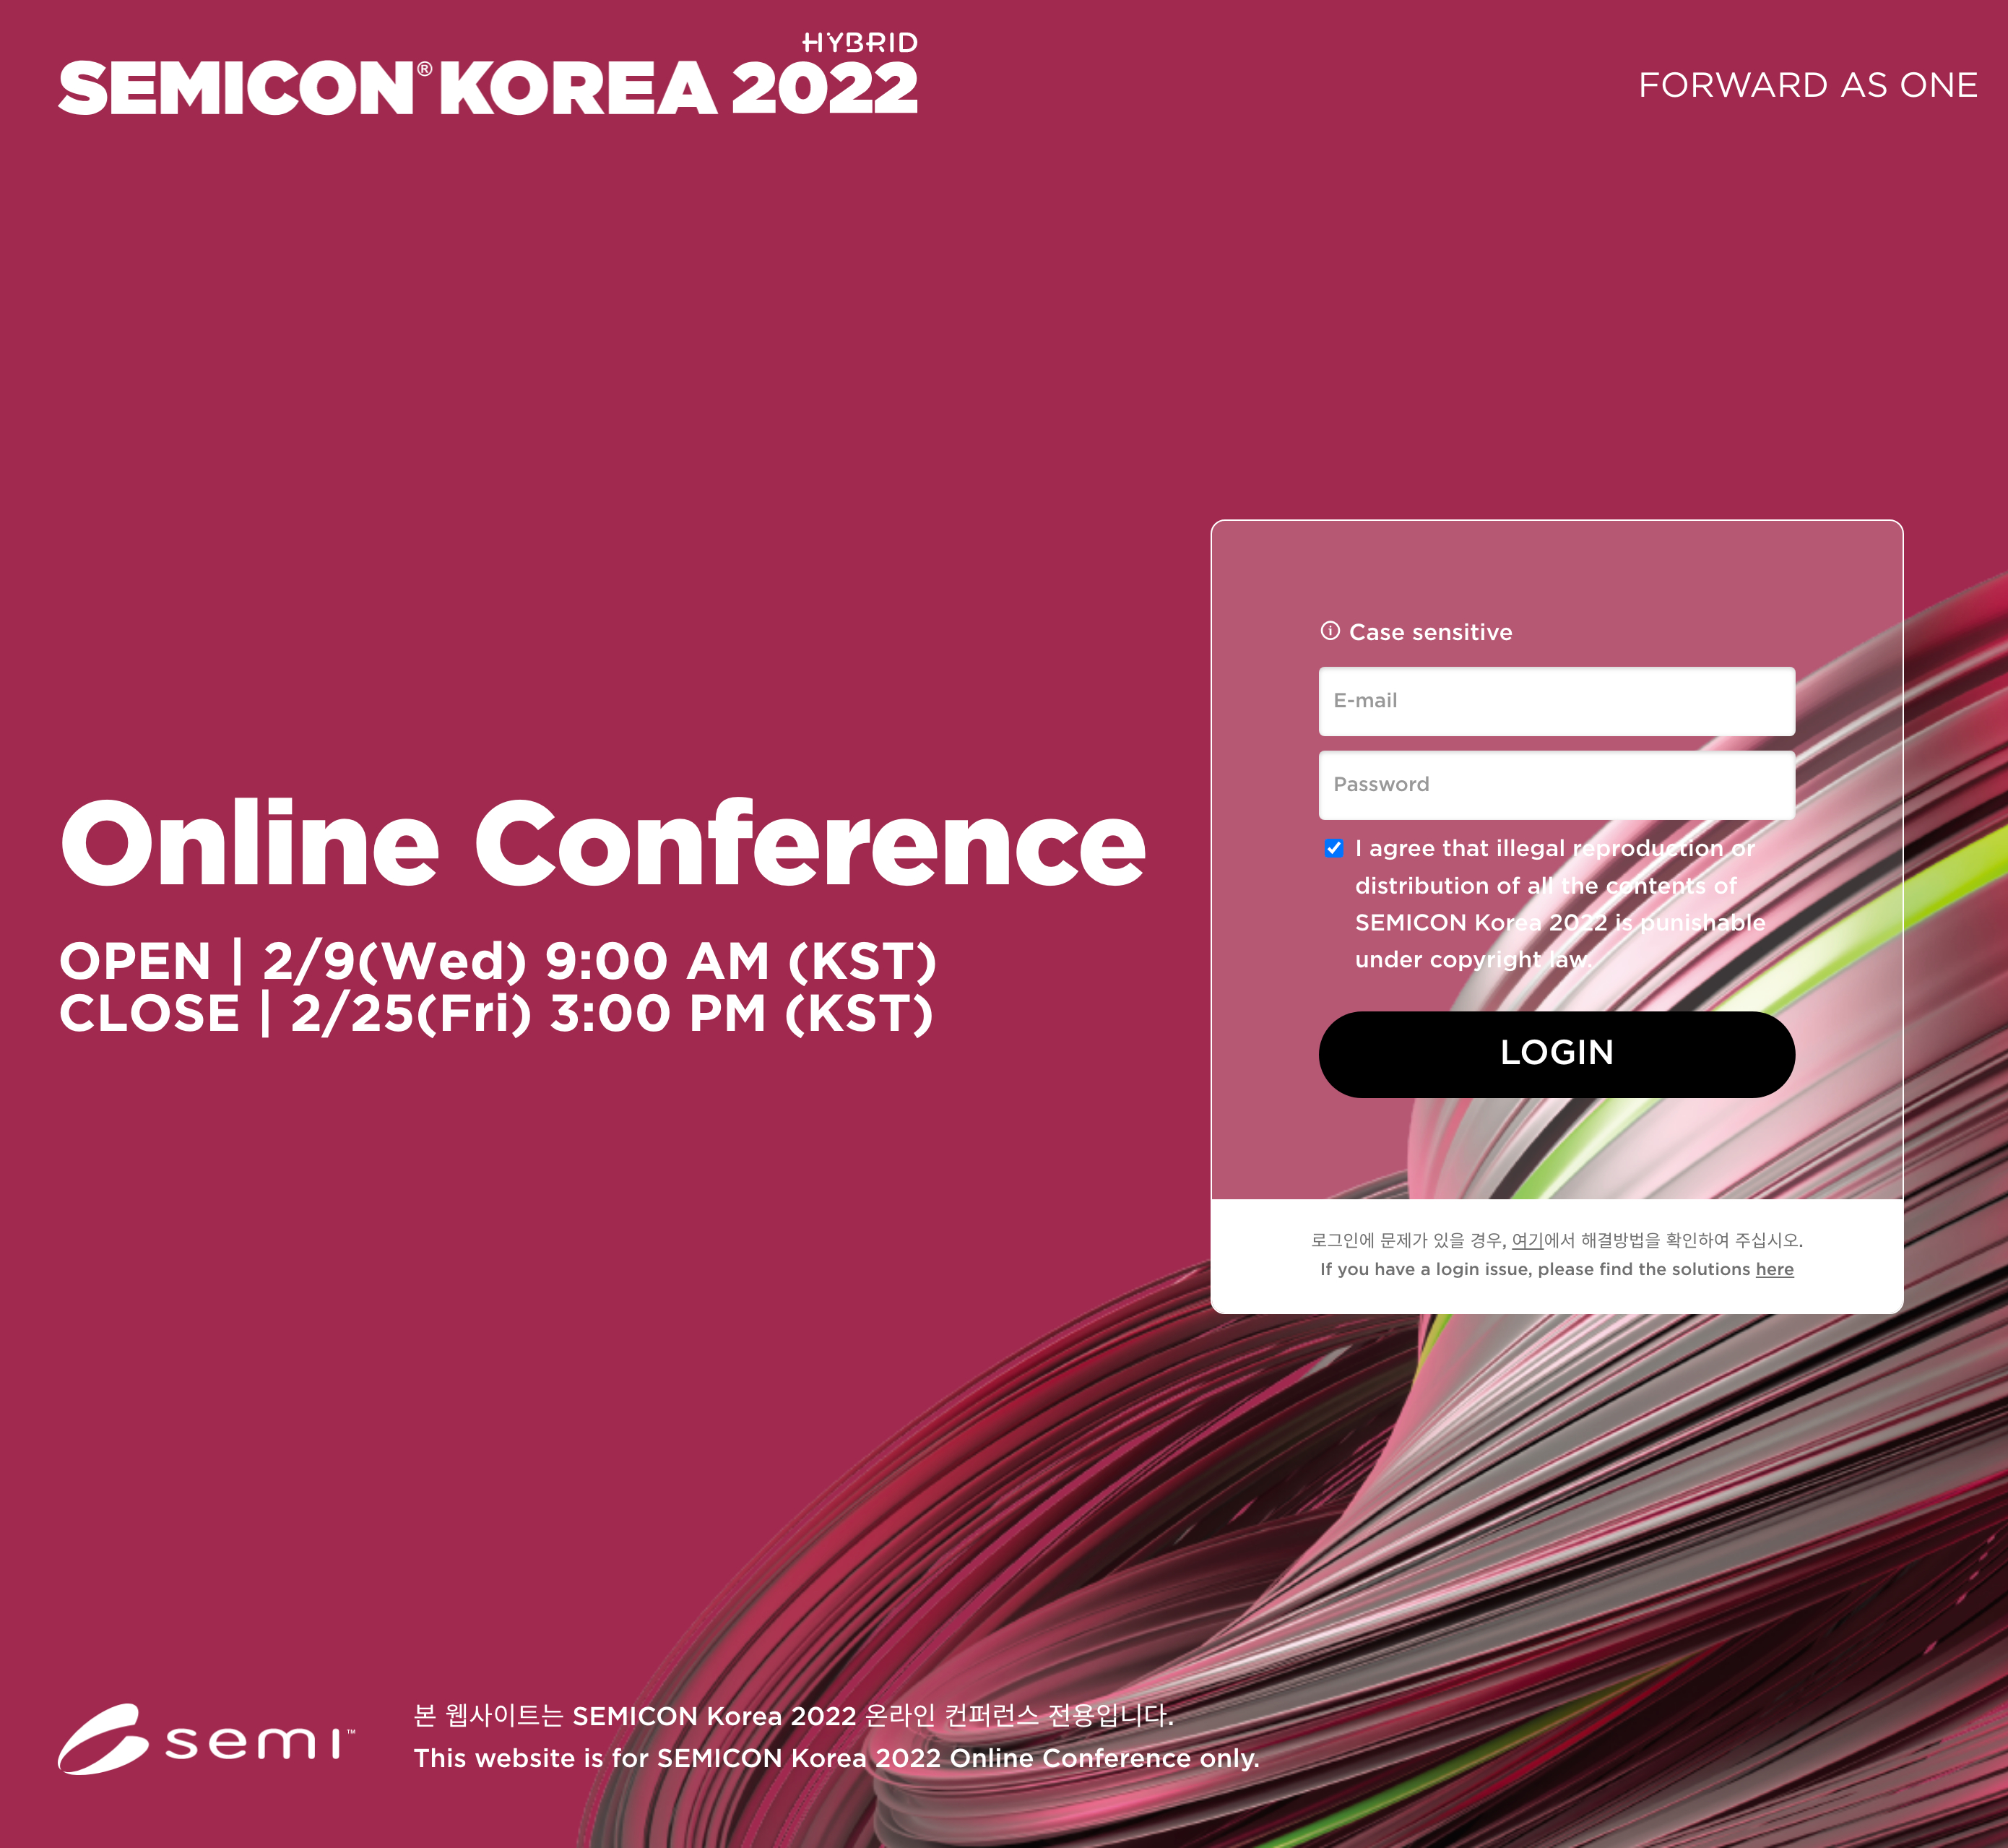 SEMICON_Korea_2022-2022-04-13_17.11.23.jpg